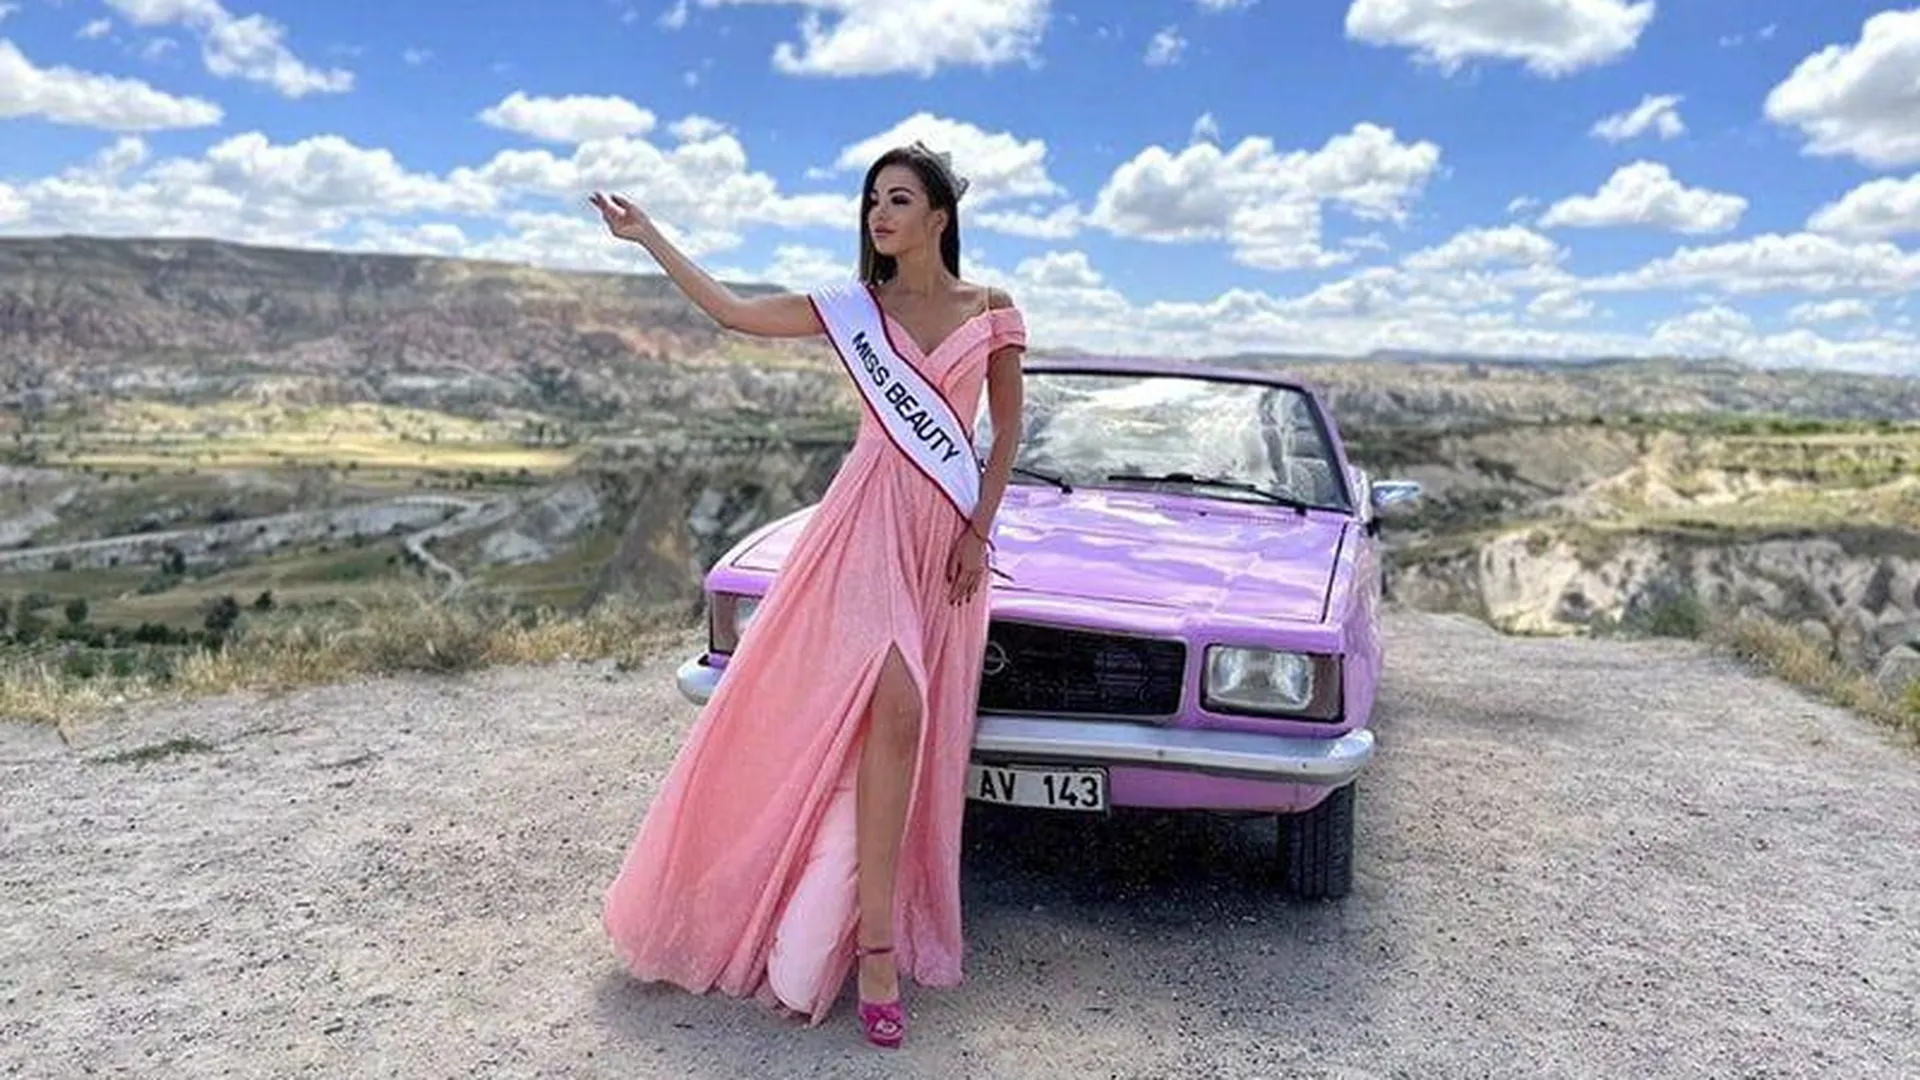 Русская модель обвинила организатора международного конкурса красоты в нападении